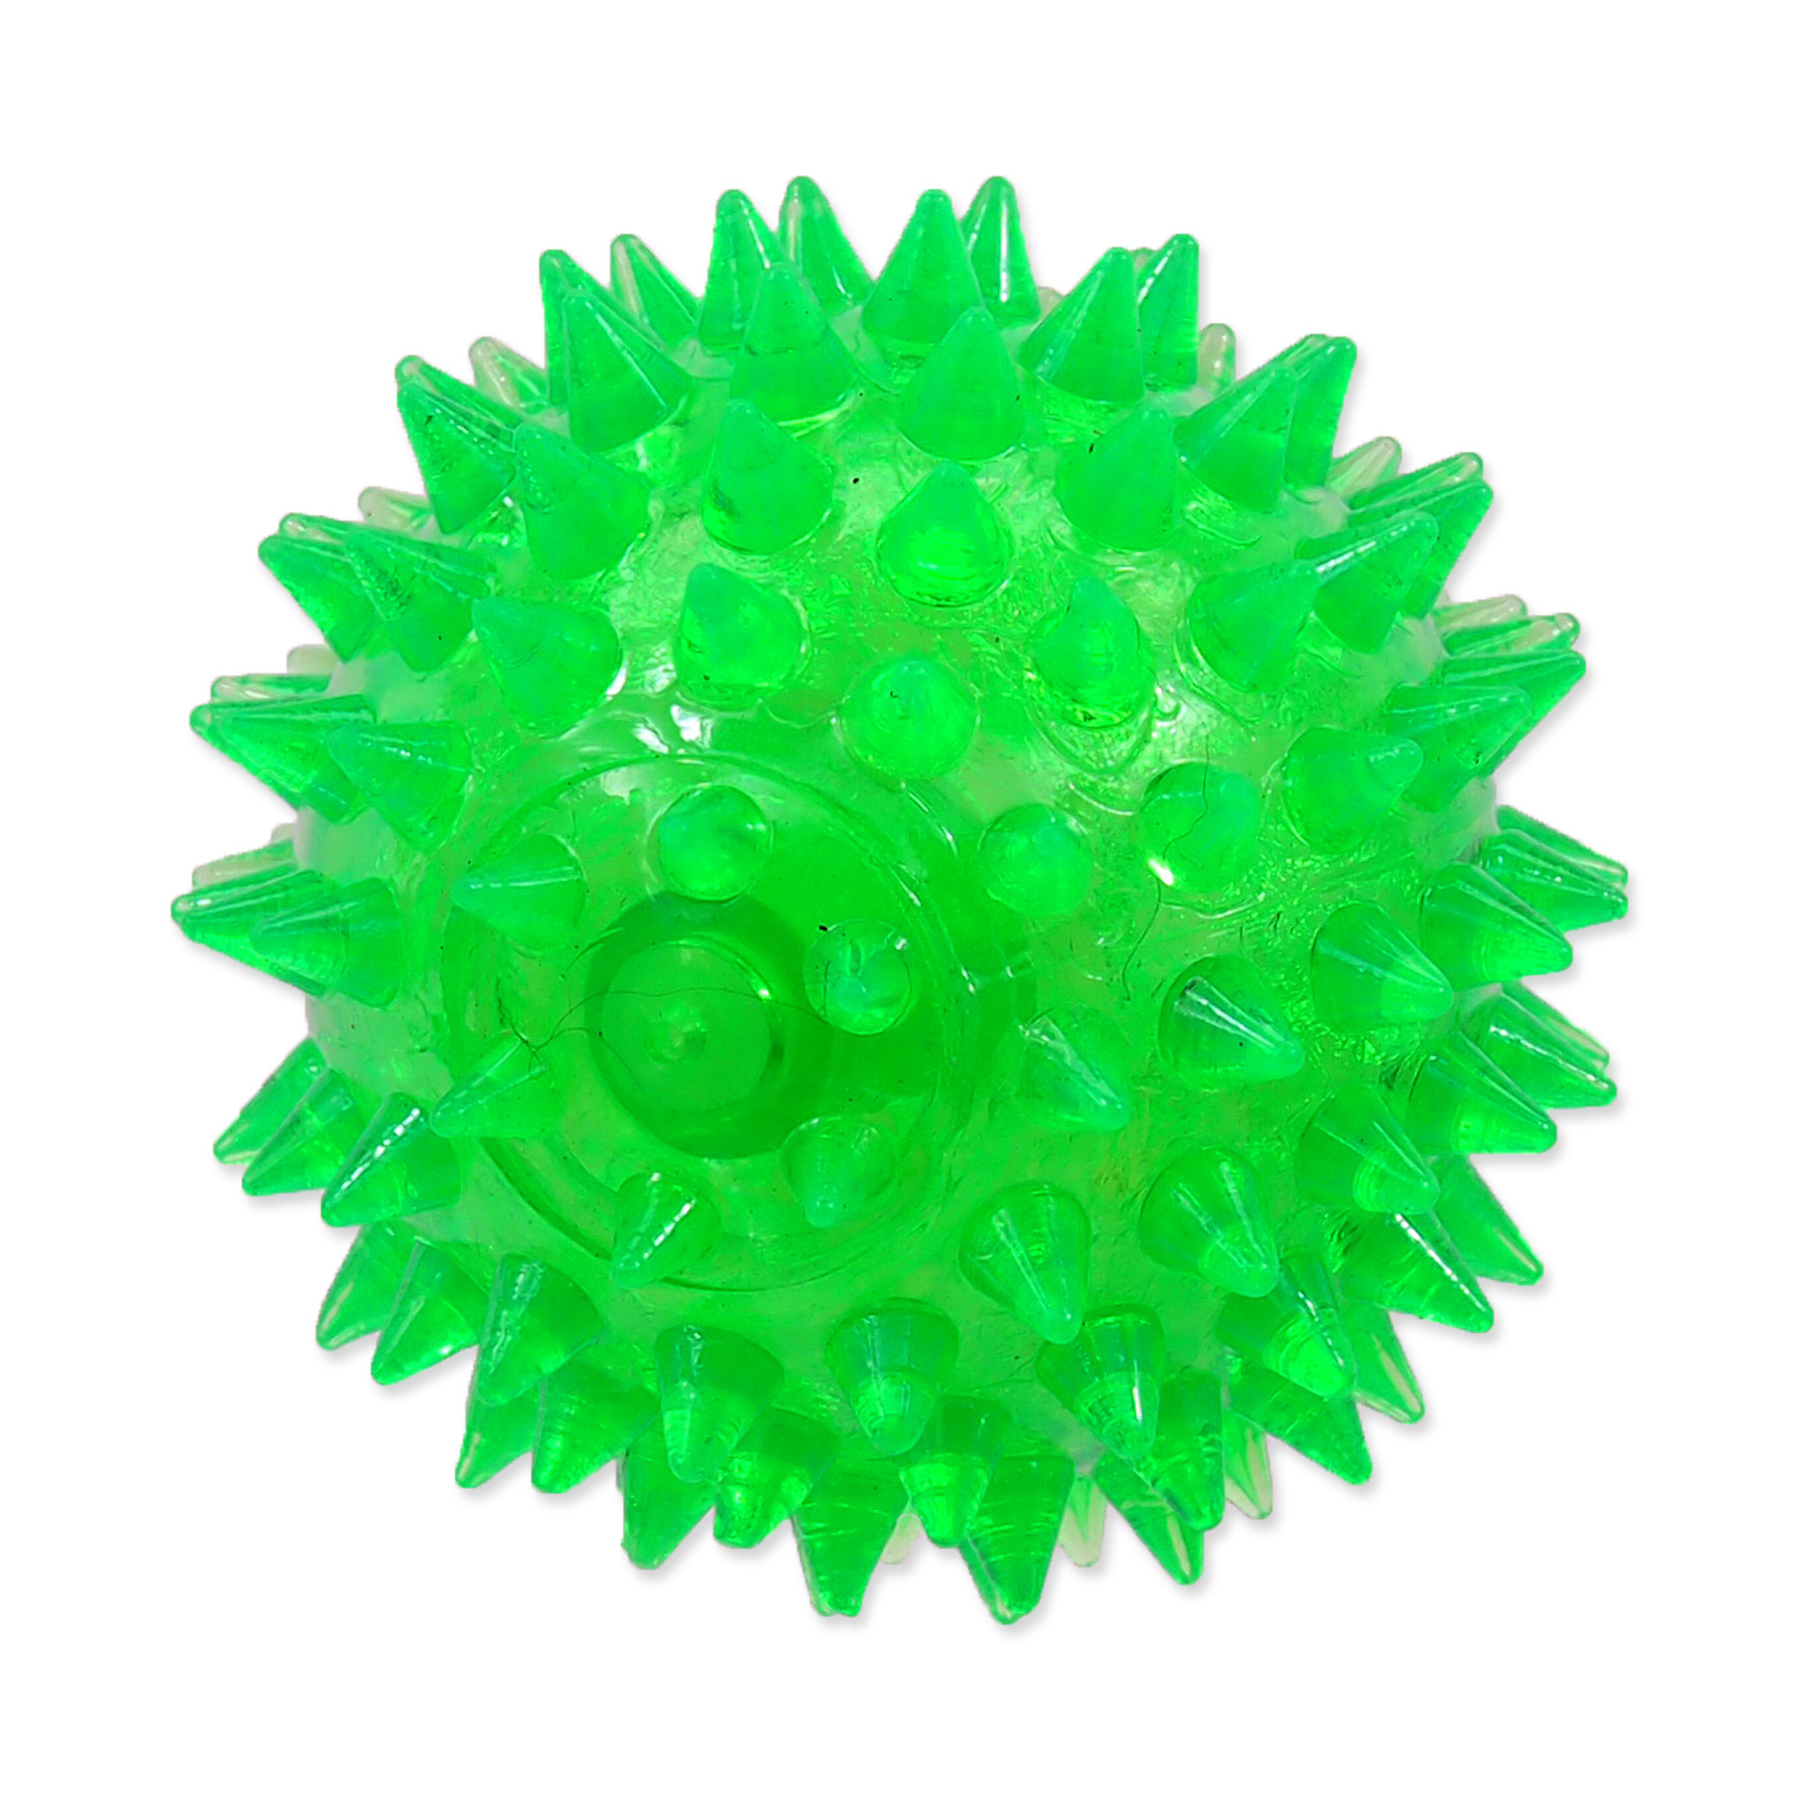 Dog Fantasy Hračka míček pískací zelený 6 cm Dog Fantasy